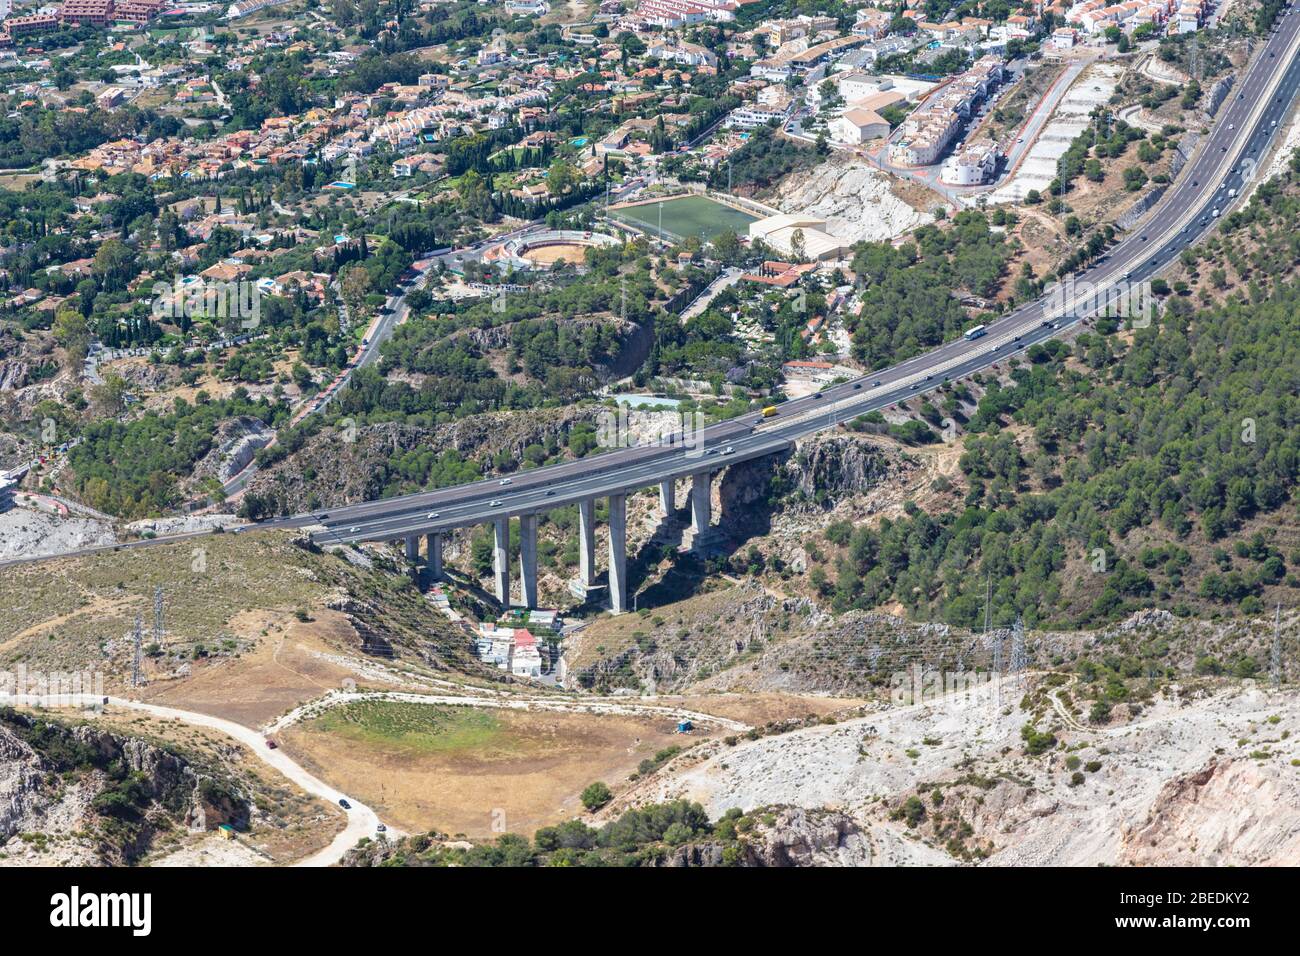 Vista aerea dell'autostrada A-7, e-15. Costa del Sol, Provincia di Malaga, Spagna. La città sulla sinistra è Arroyo de la Miel. Foto Stock